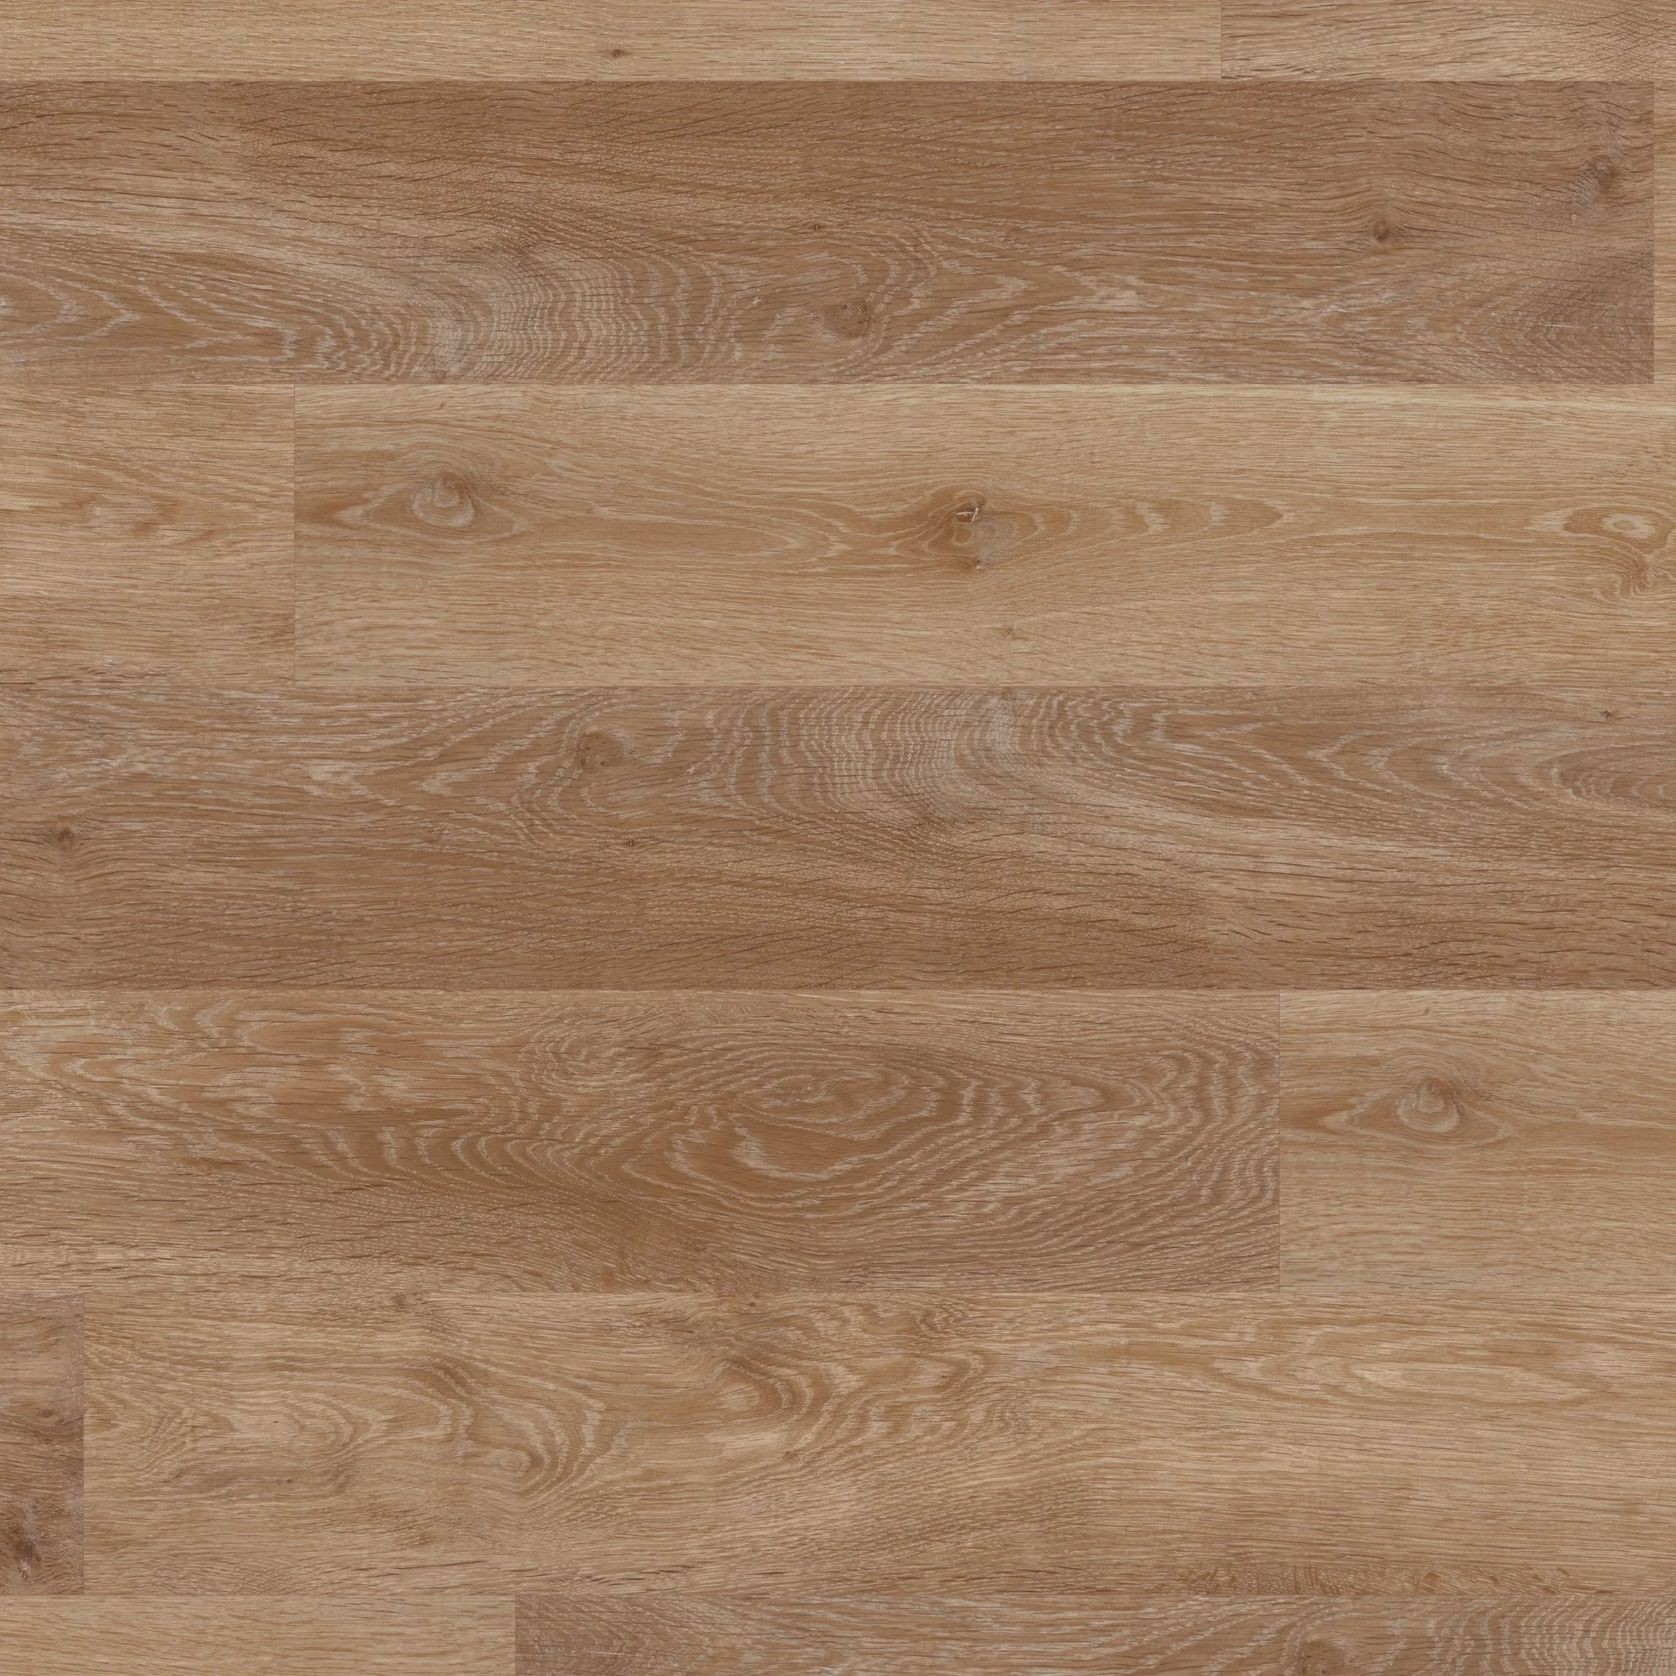 Pale Limed Oak Flooring gallery detail image